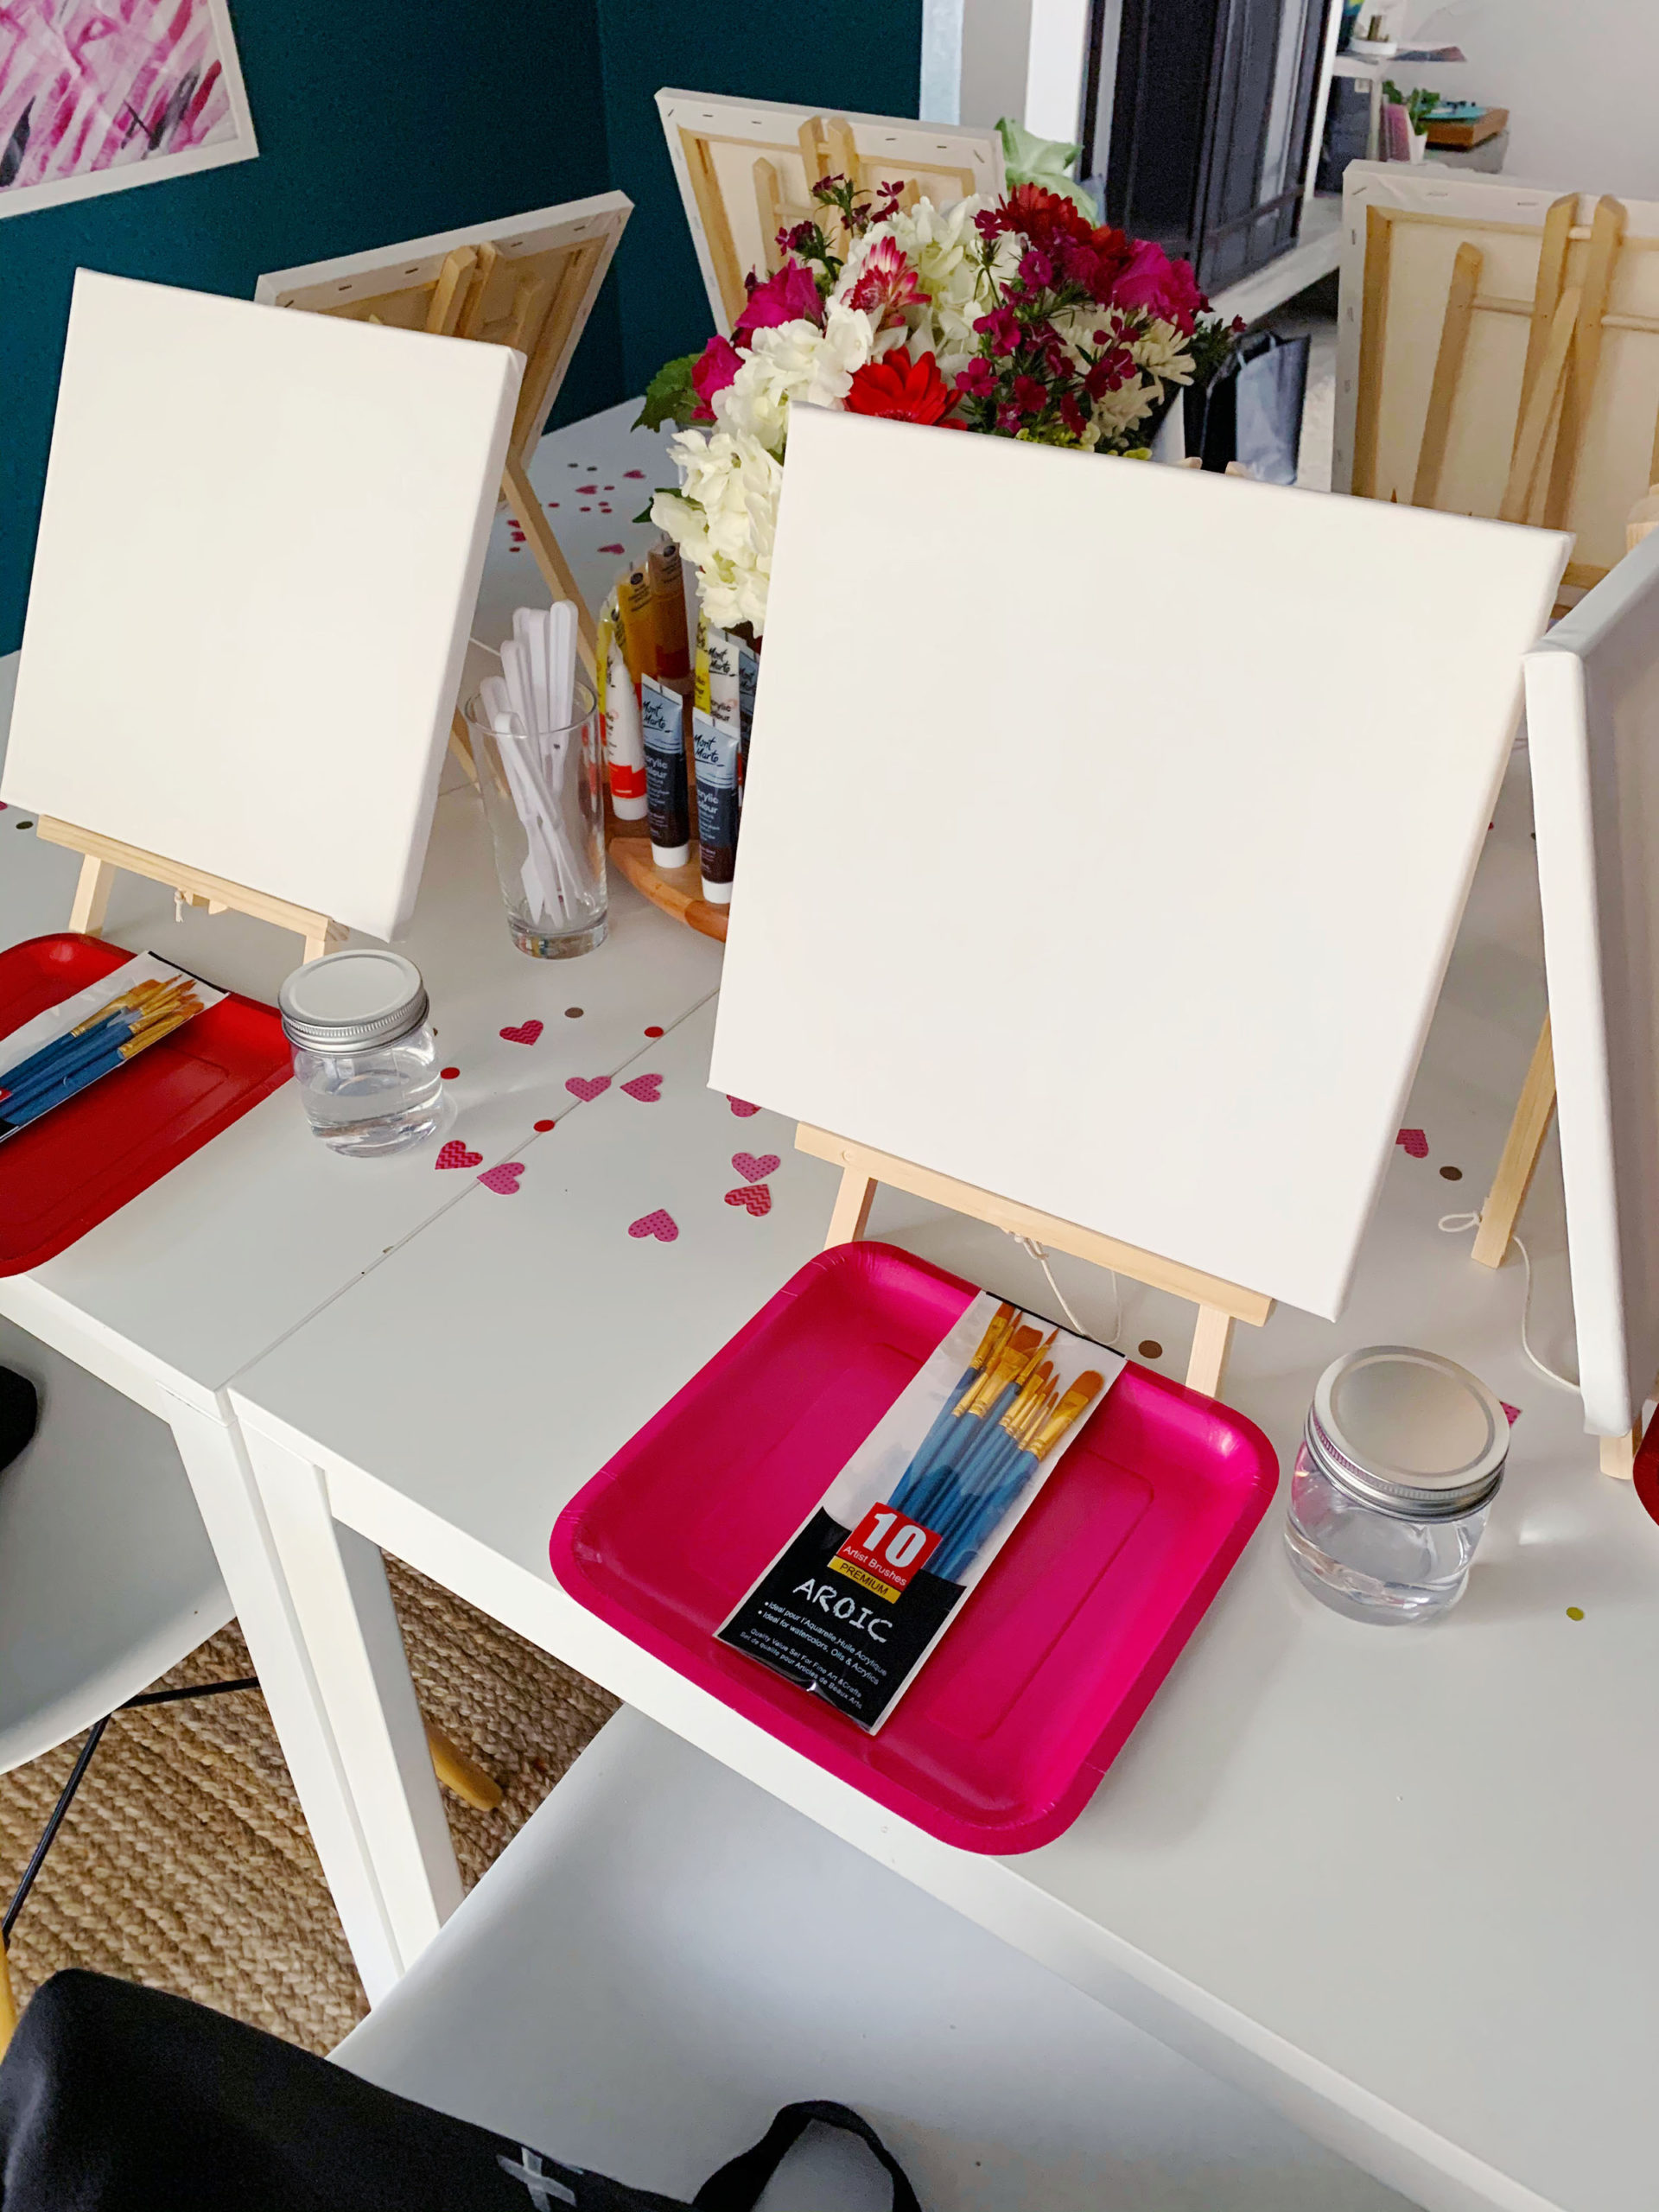 Art Party DIY Favor Paint Party Favor Valentine Couple Kids 